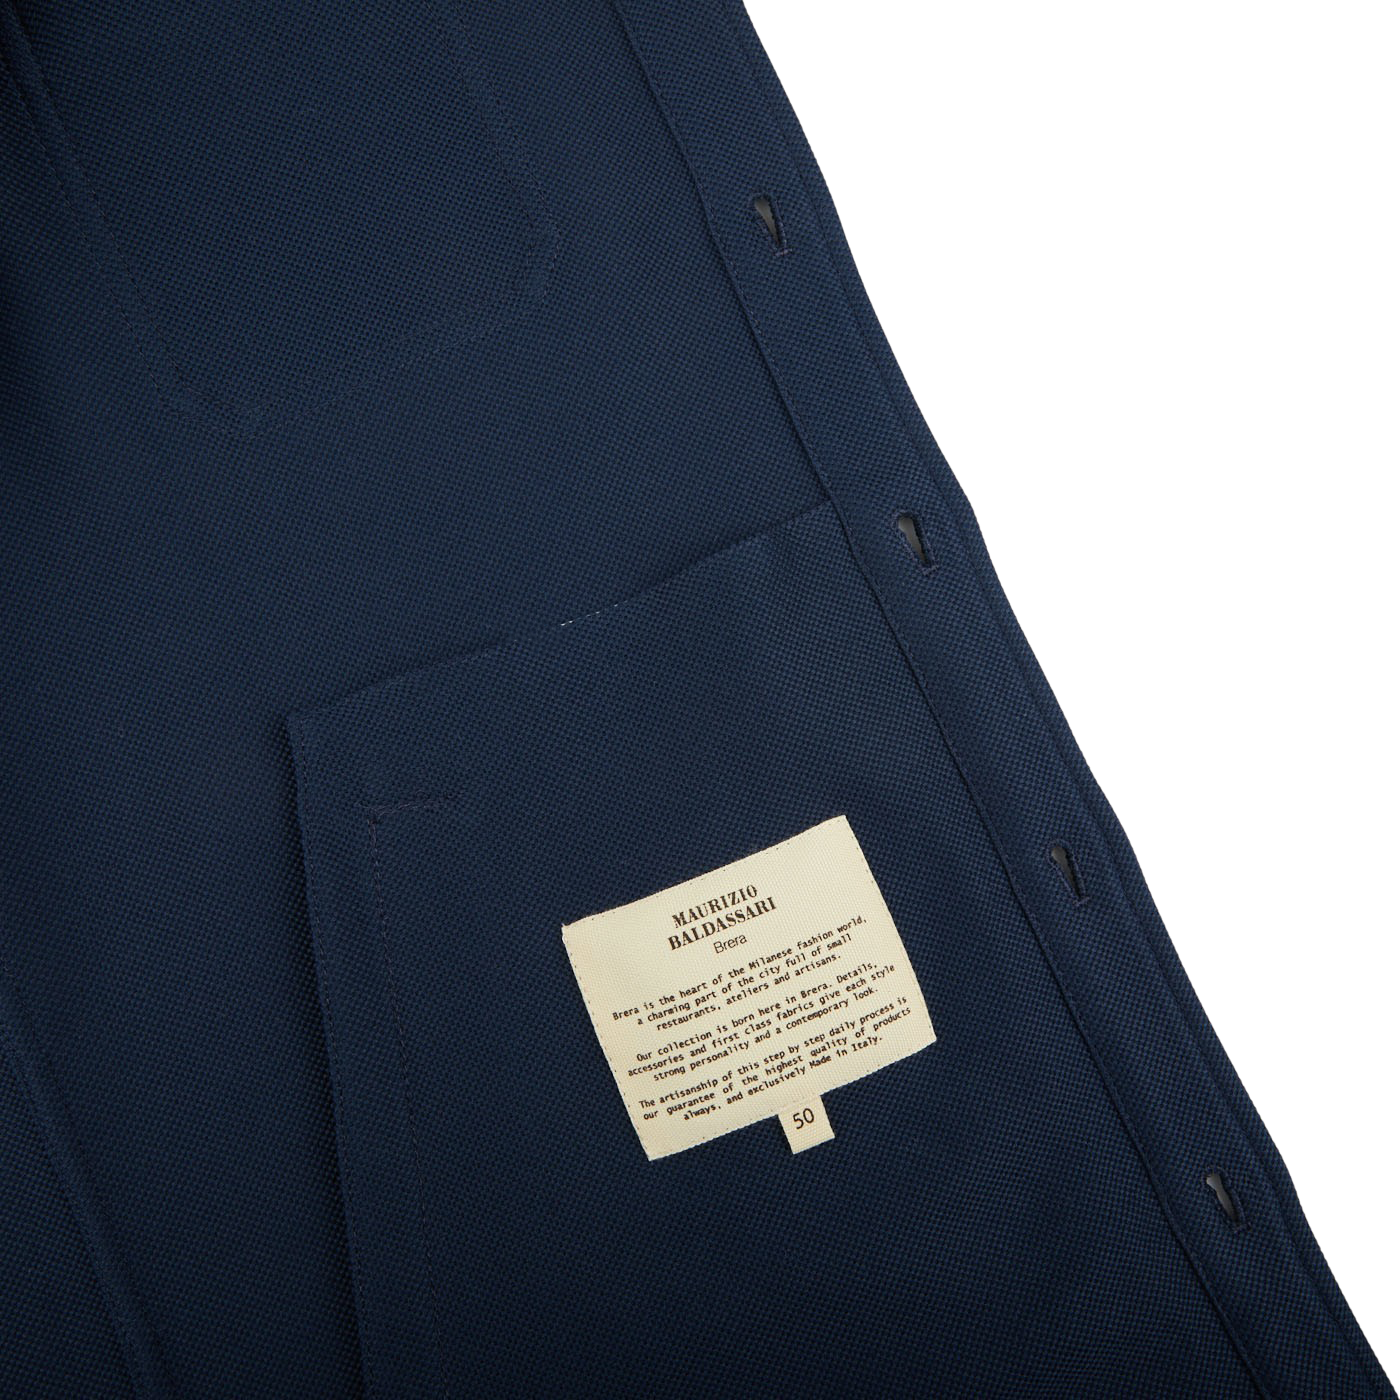 Blue Cotton Sartorial Polo Shirt - The Fleece Milano